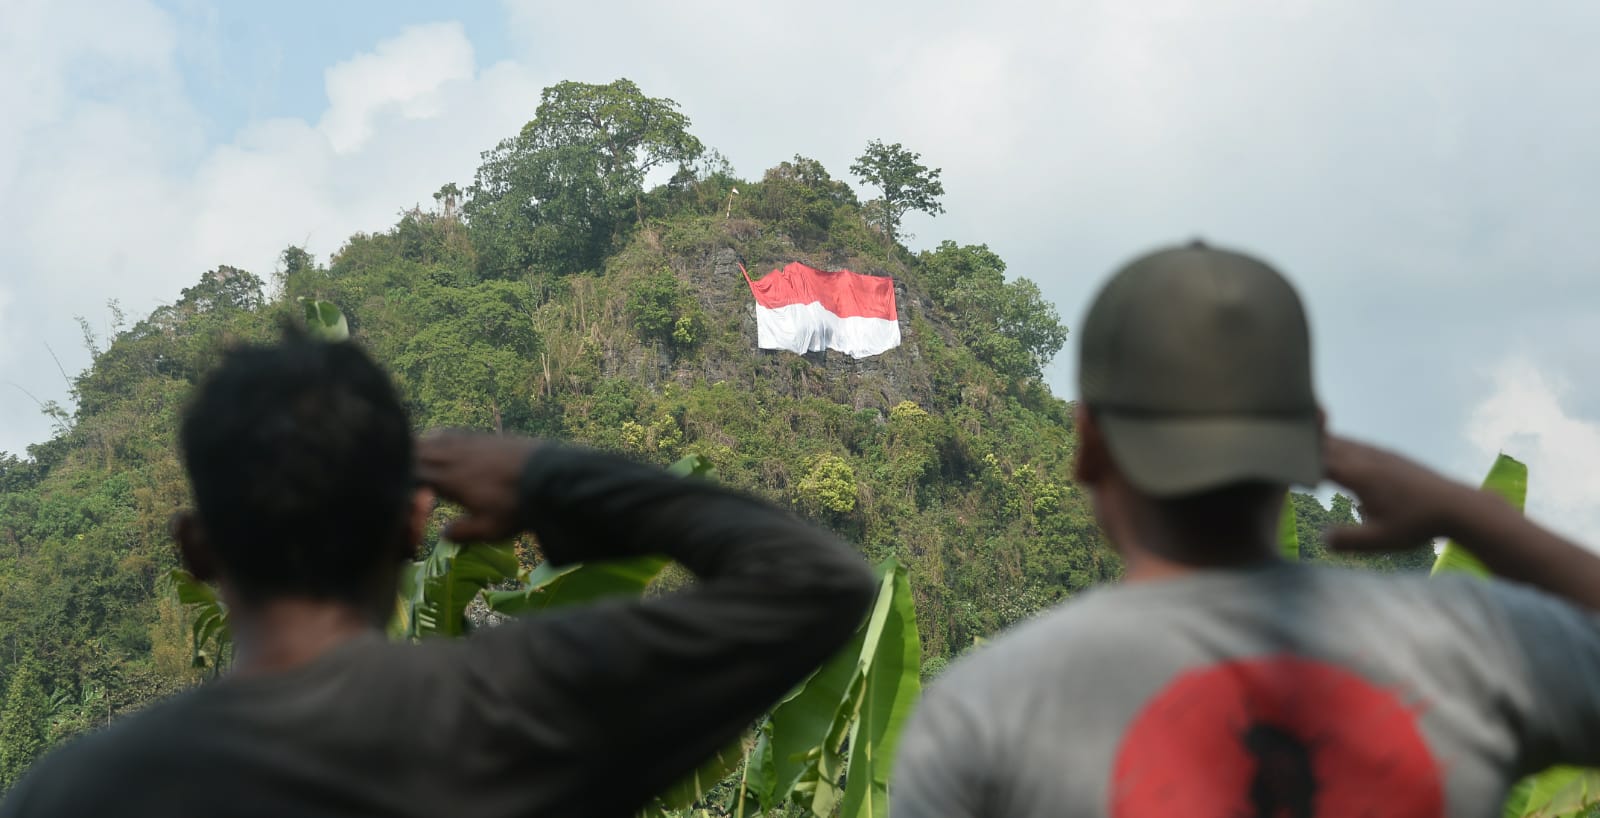 Makna dan Arti Kemerdekaan Bagi Masyarakat Indonesia